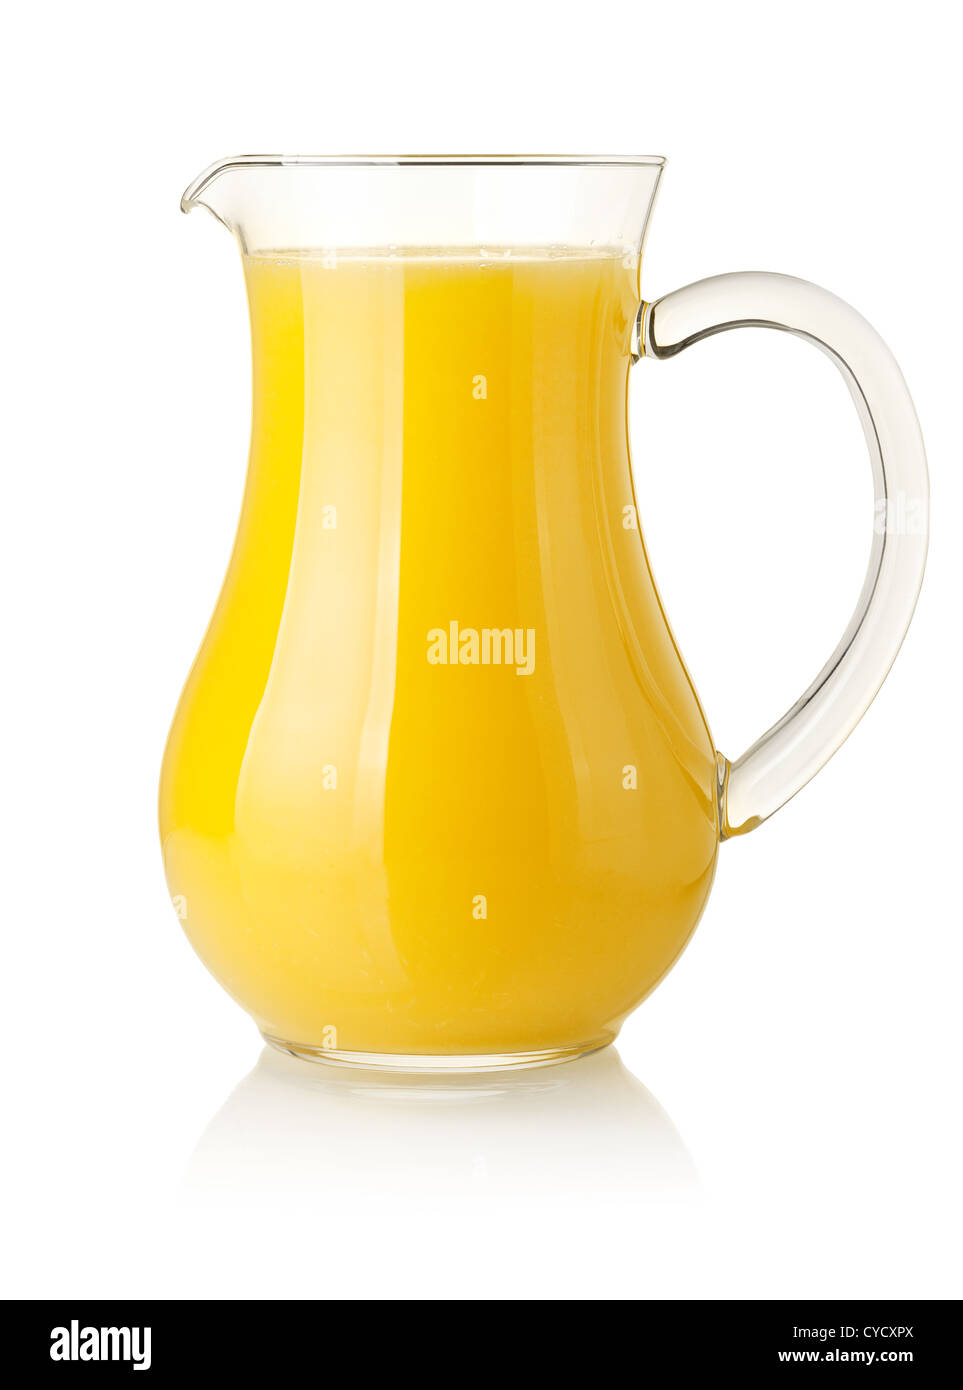 Pitcher of orange juice isolated on white Stock Photo - Alamy